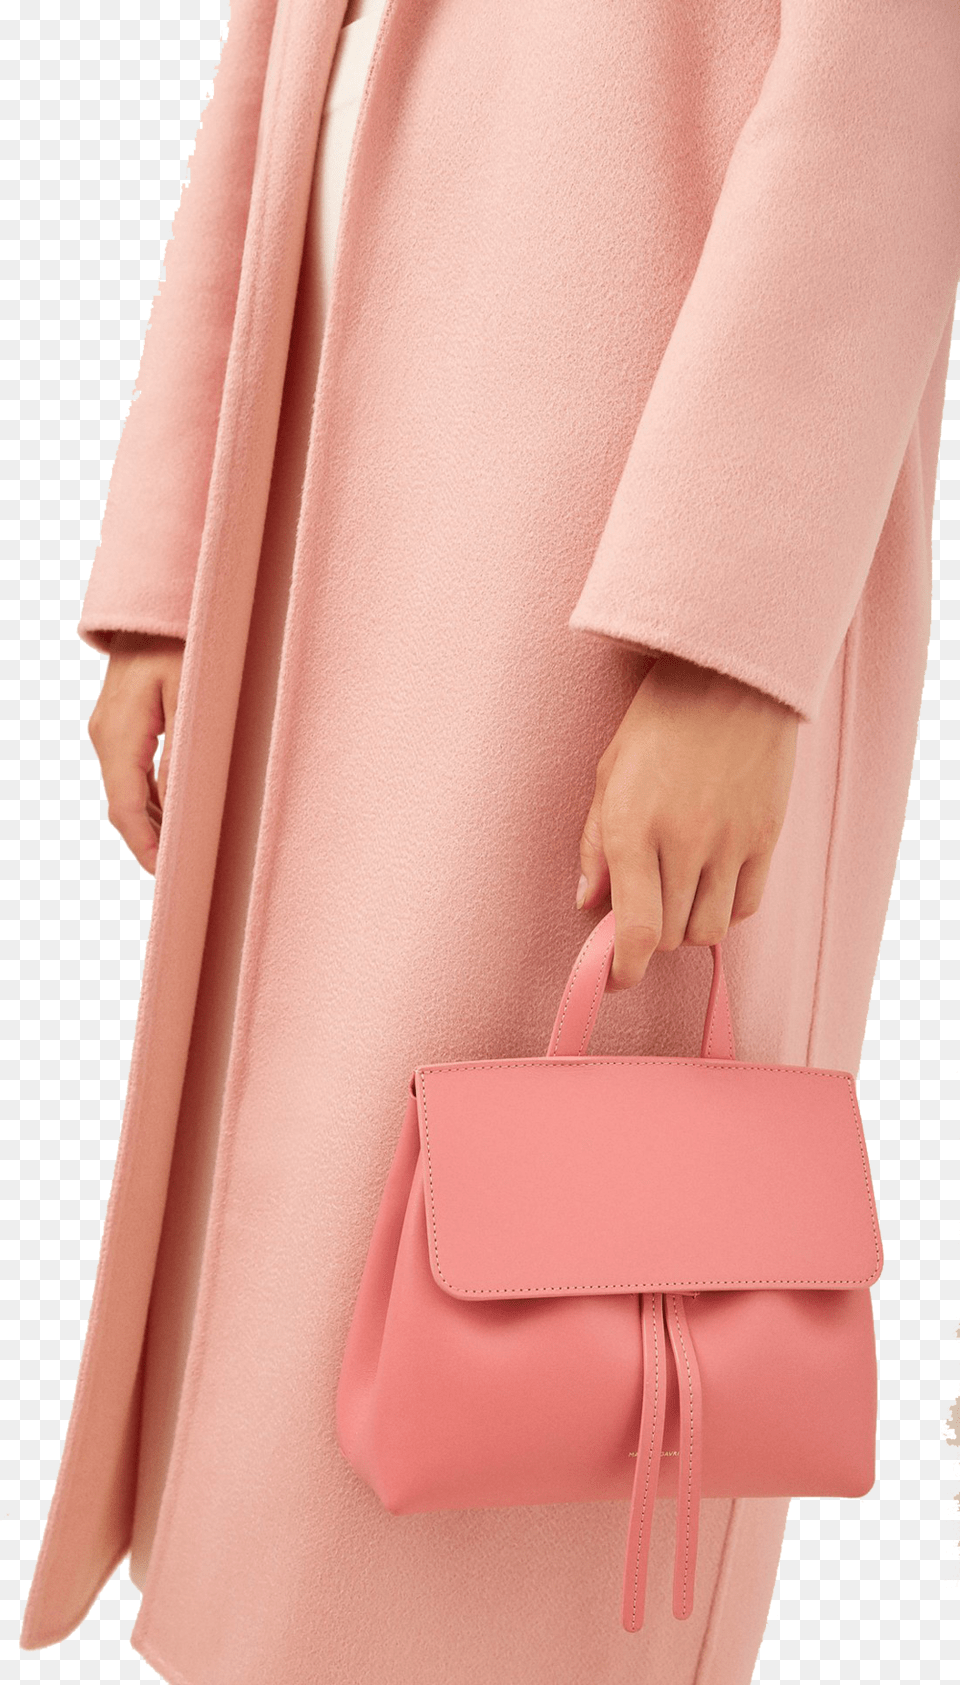 Pink Coat Bag, Accessories, Clothing, Handbag, Purse Png